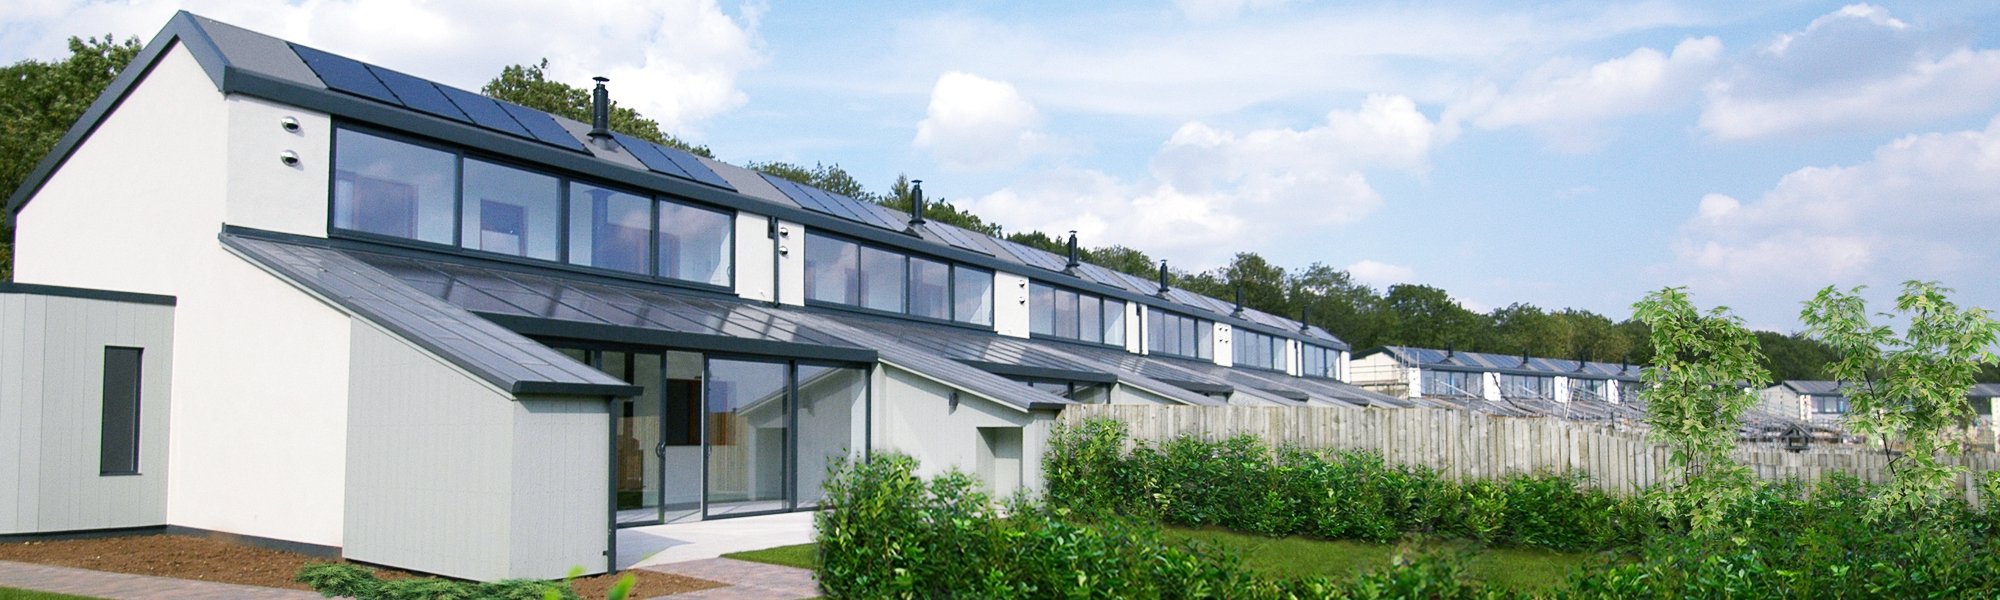 Eco Homes Sunflex SVG Composite Windows Park Farm Design